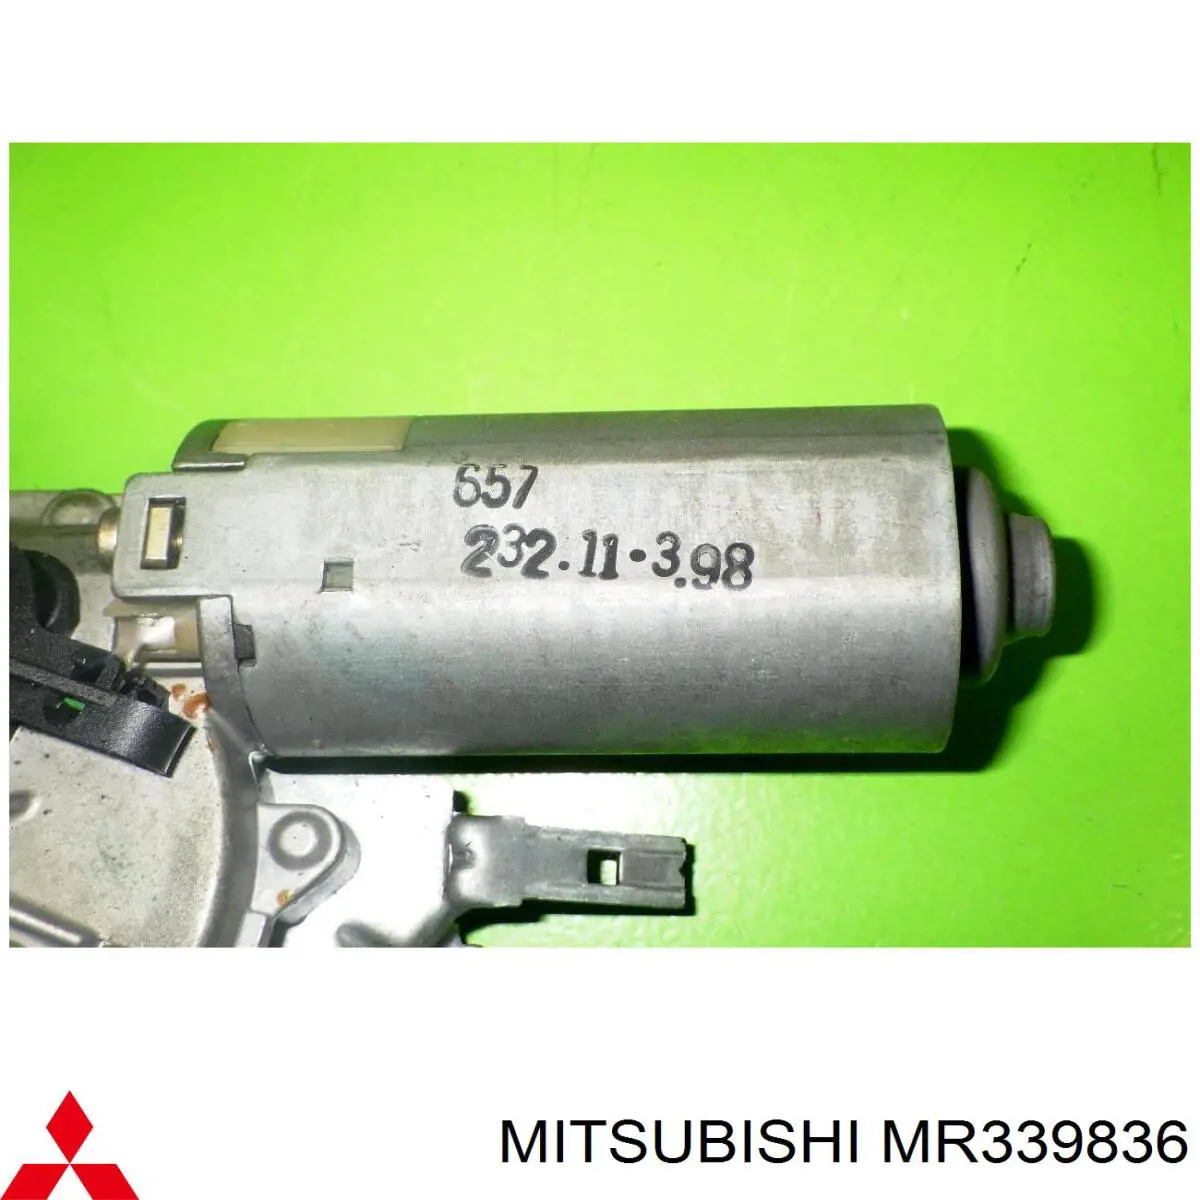 MR339836 Mitsubishi motor limpiaparabrisas, trasera